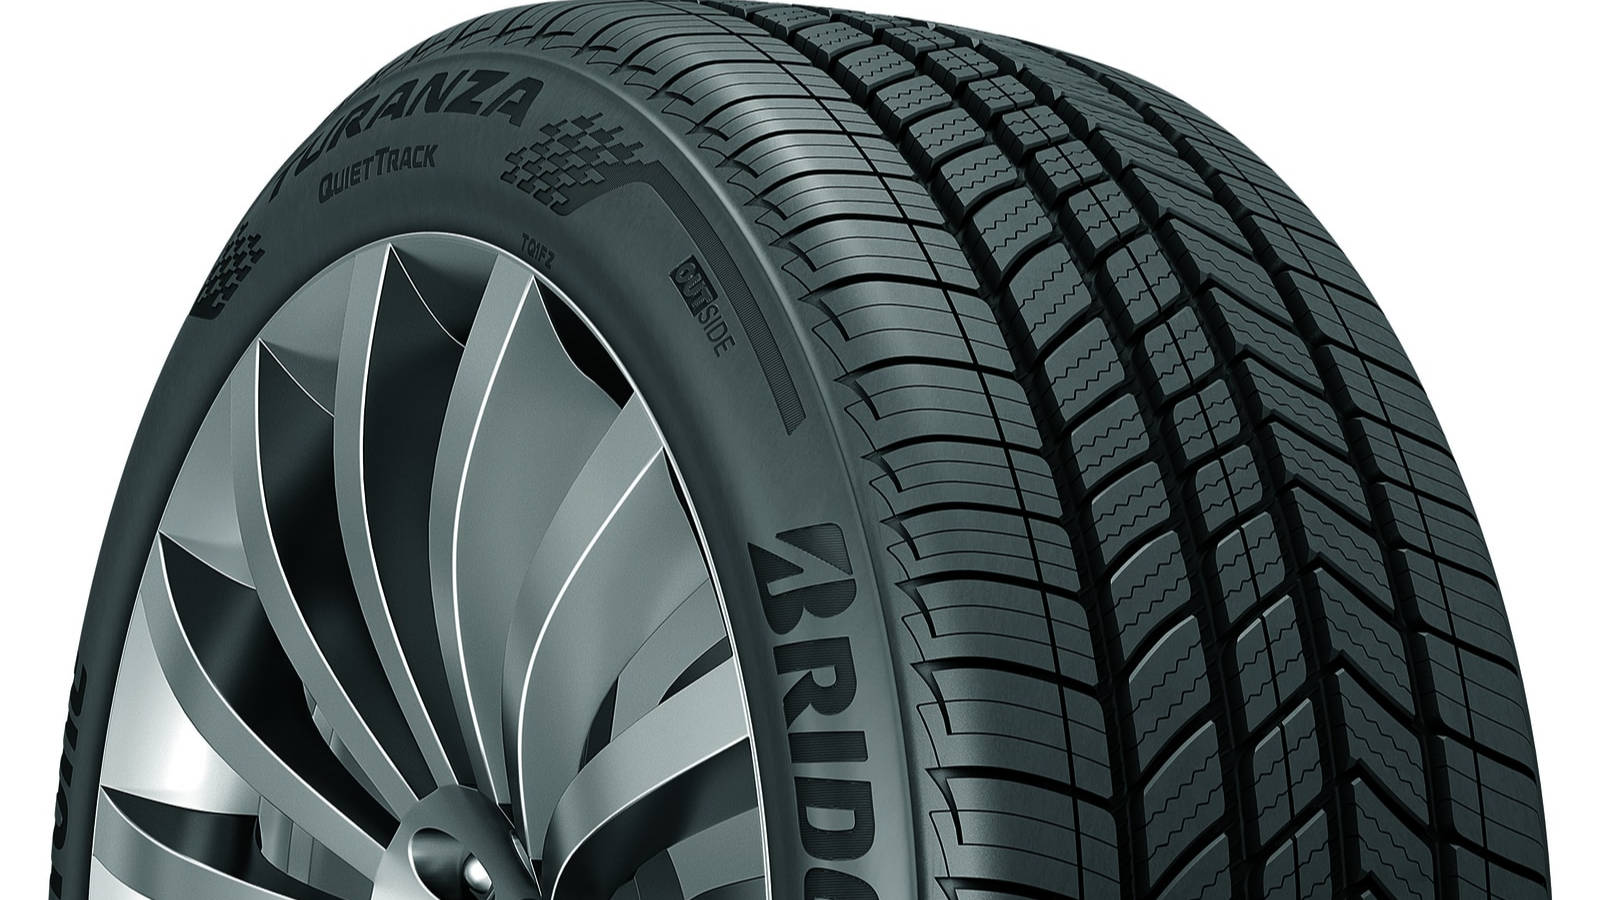 Bridgestone Rubber Tire Wallpaper